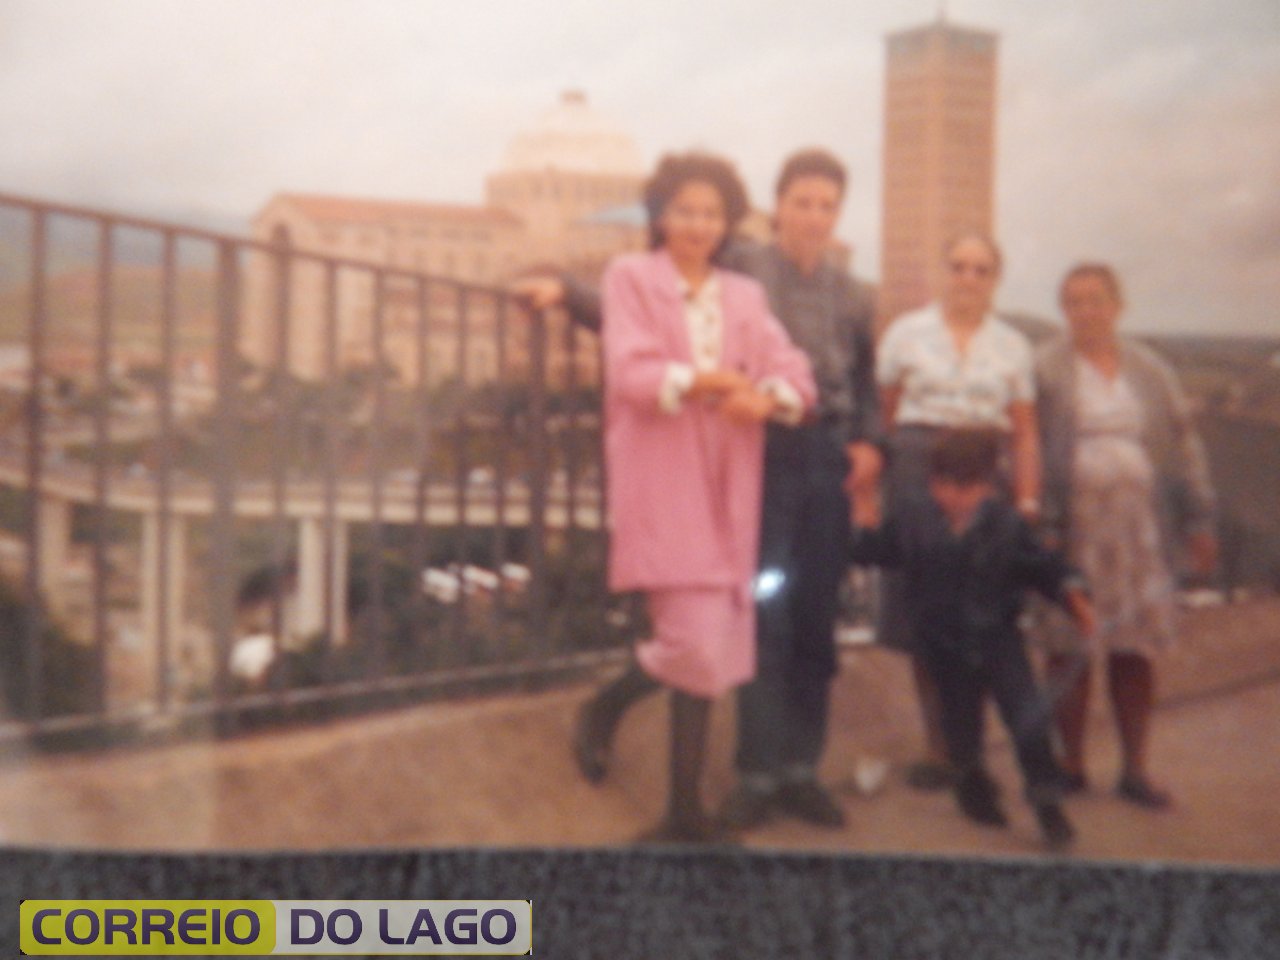 Esquerda: Elza Correia, Marcos Correia (falecido) Manuela Correia e Maria M. Correia. Mãe do professor João. Visitavam Aparecida do Norte. Década de 90.